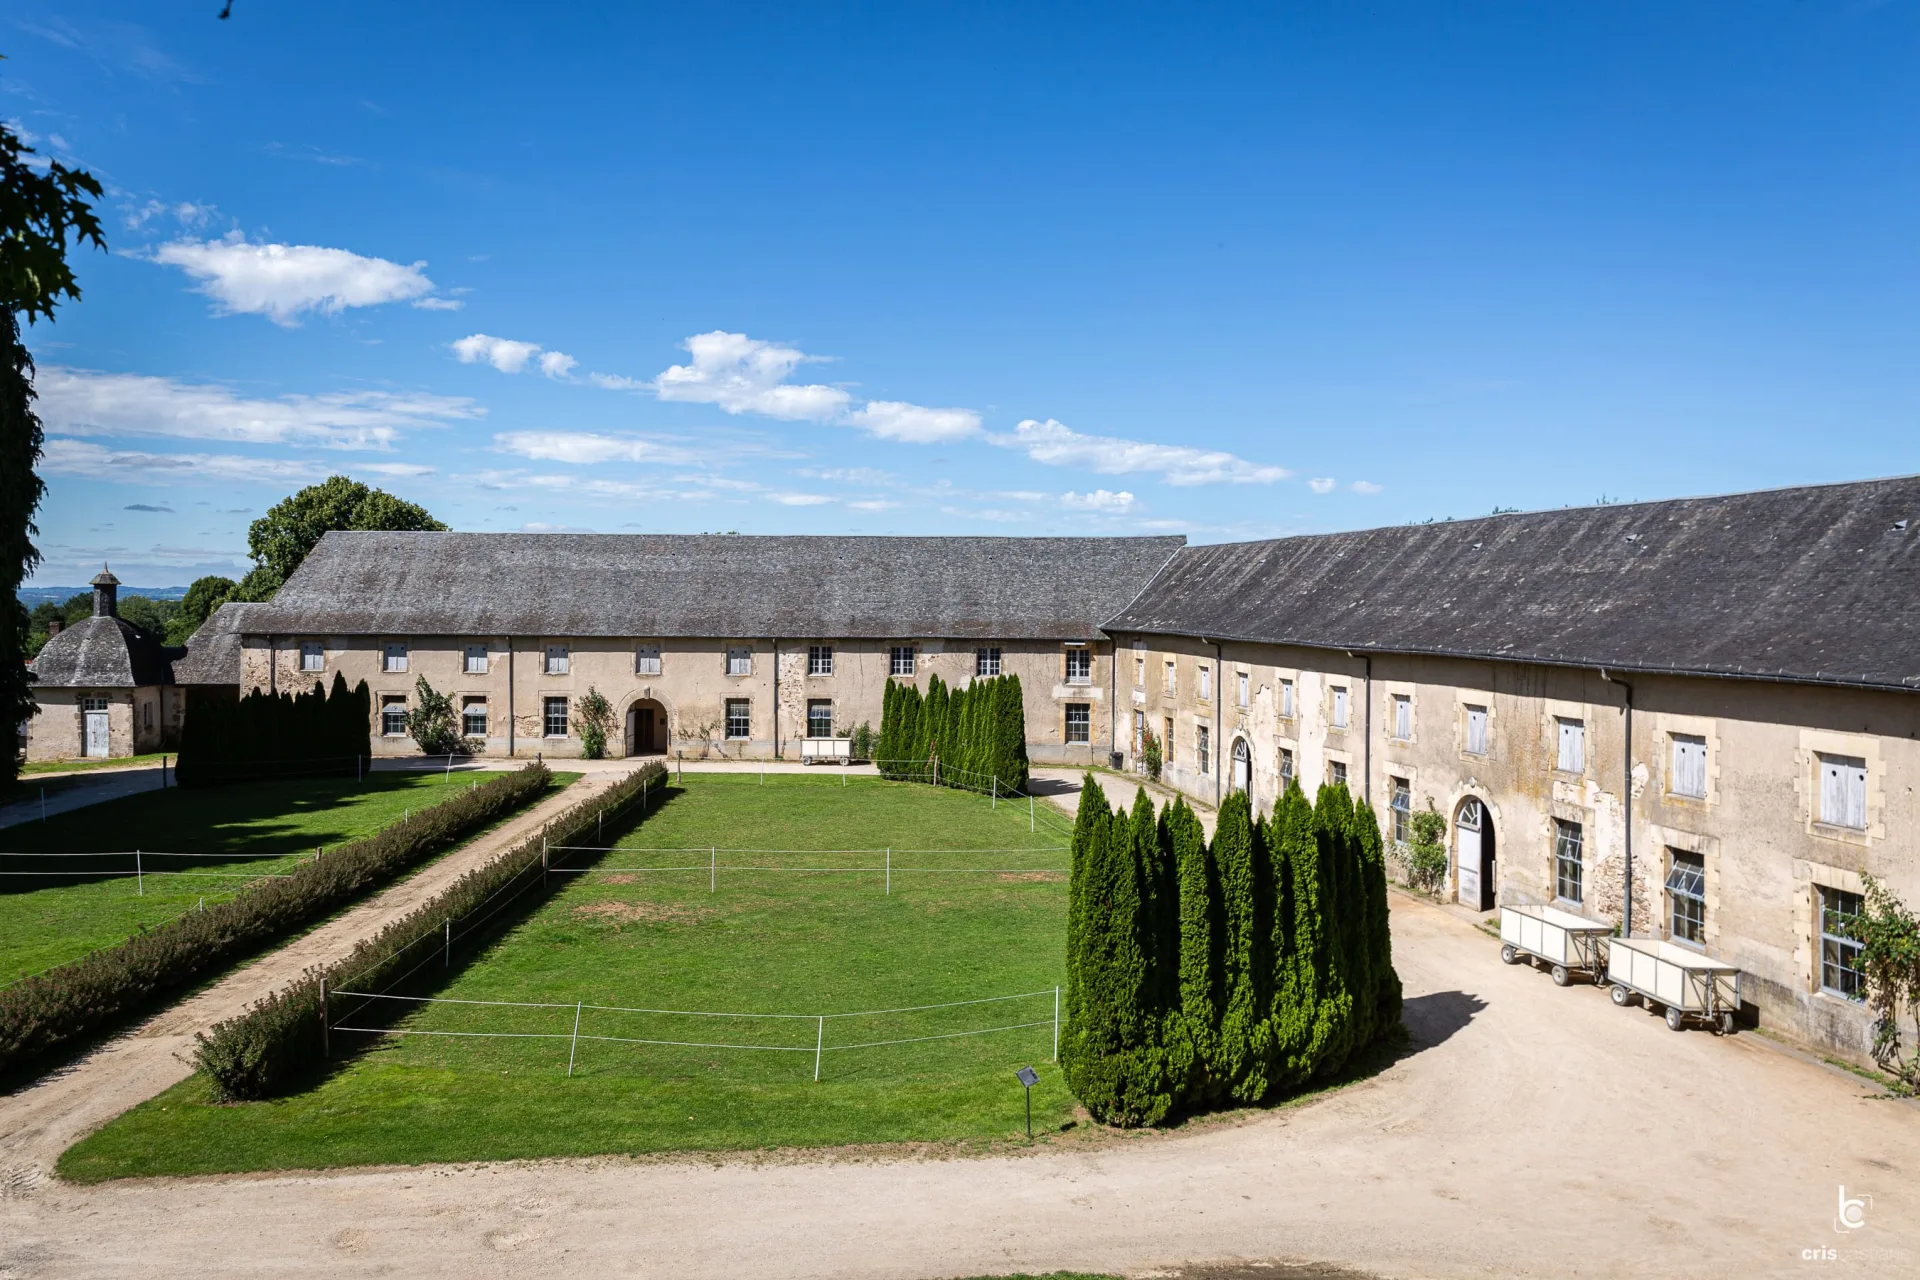 Château de Pompadour: Orangery stables